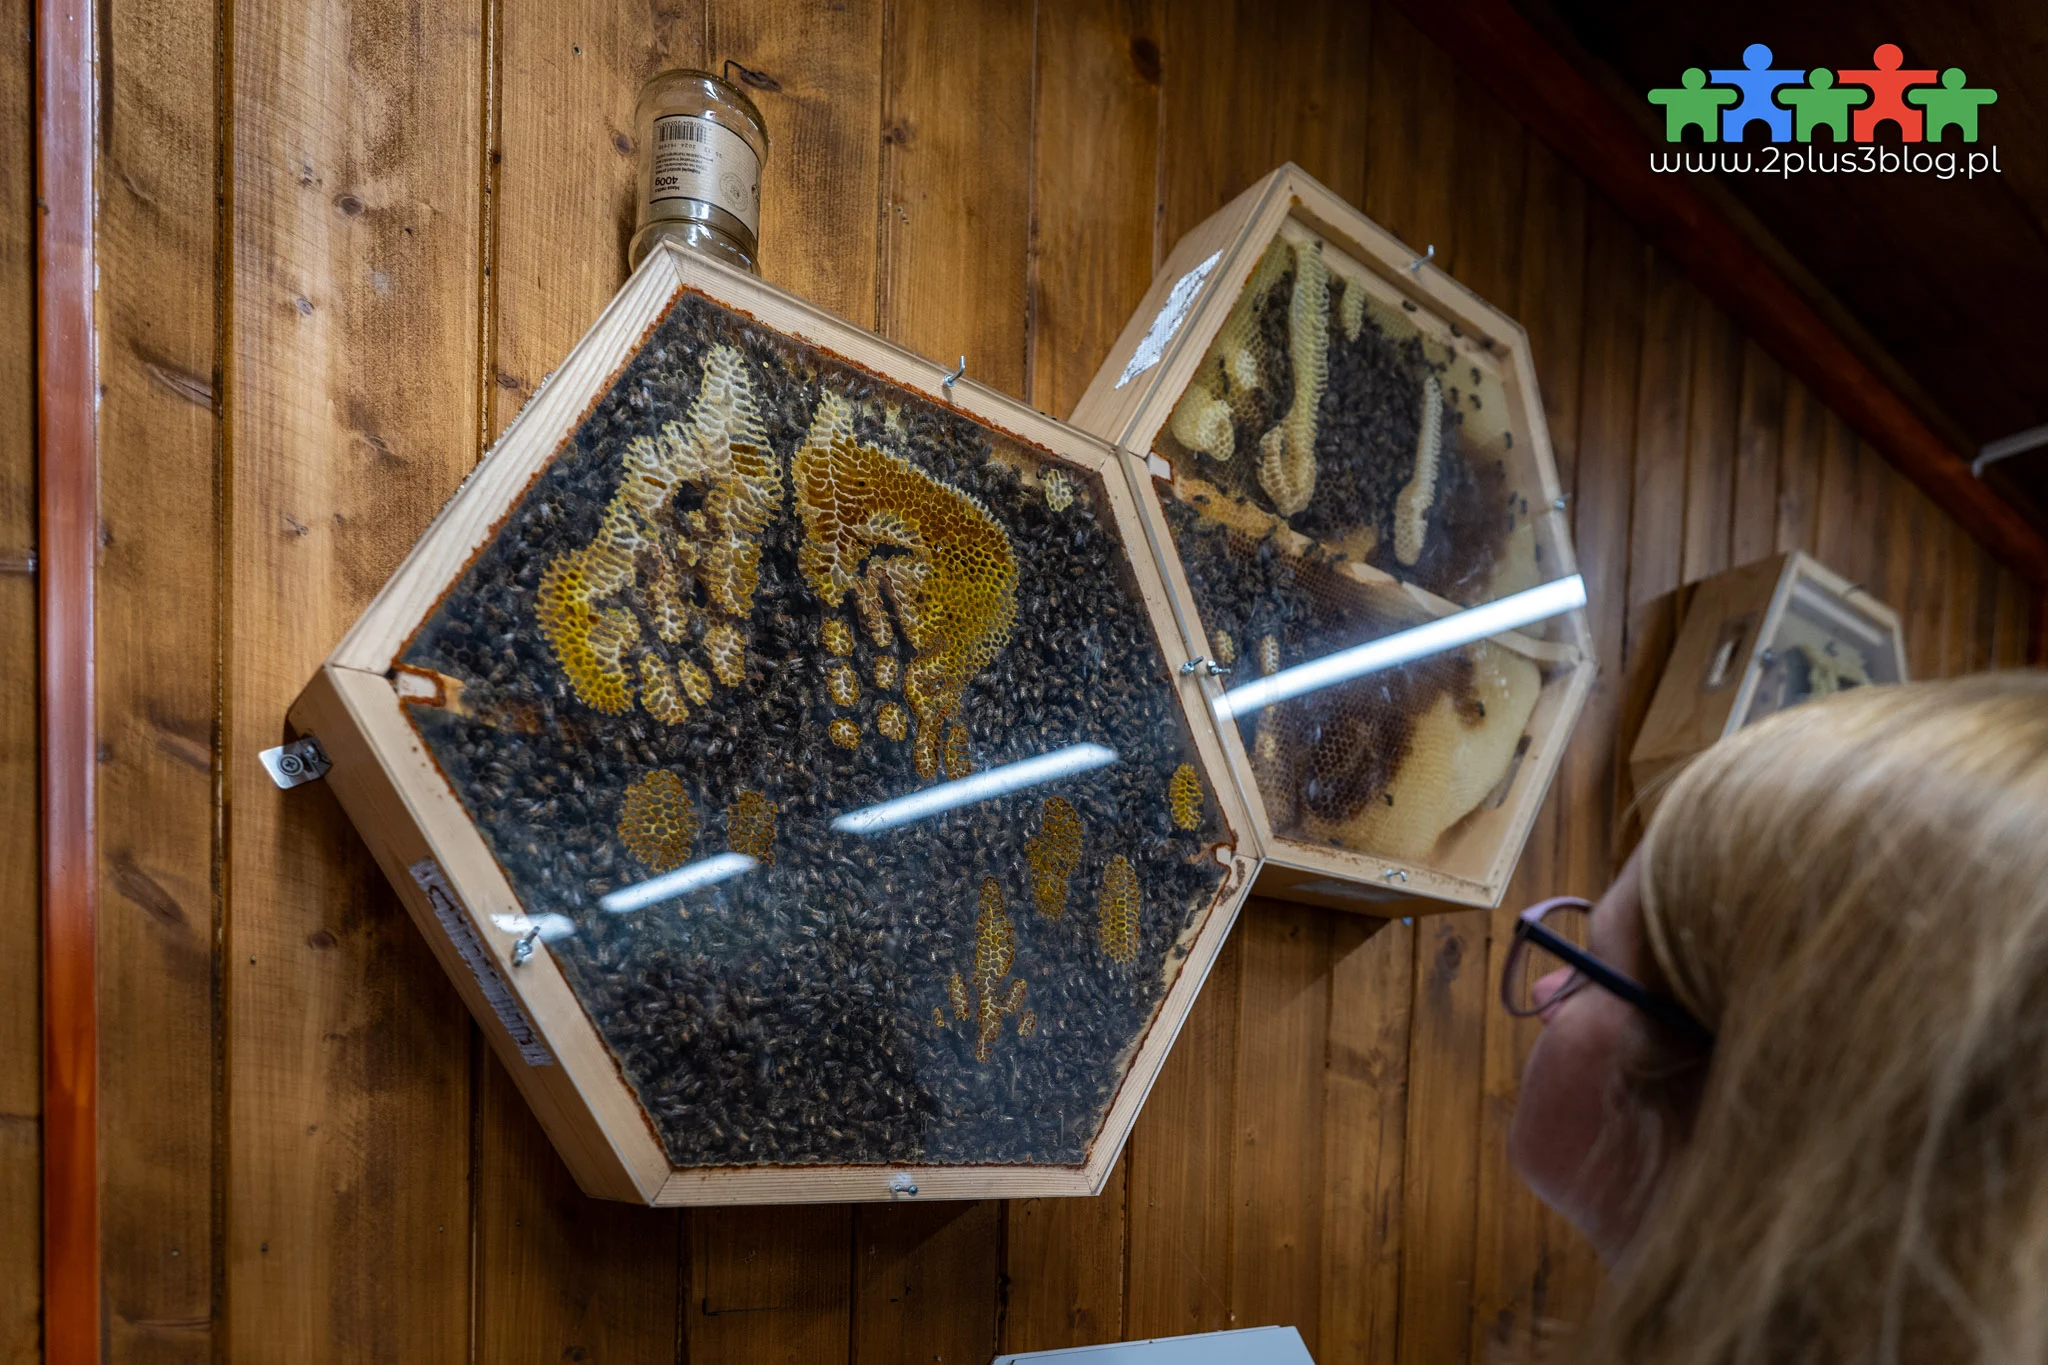 Interaktywne Centrum Pszczelarstwa Apilandia w Kleczy Dolnej to miejsce, w którym poprzez naukę i zabawę odkryjecie największe tajemnice świata pszczół!